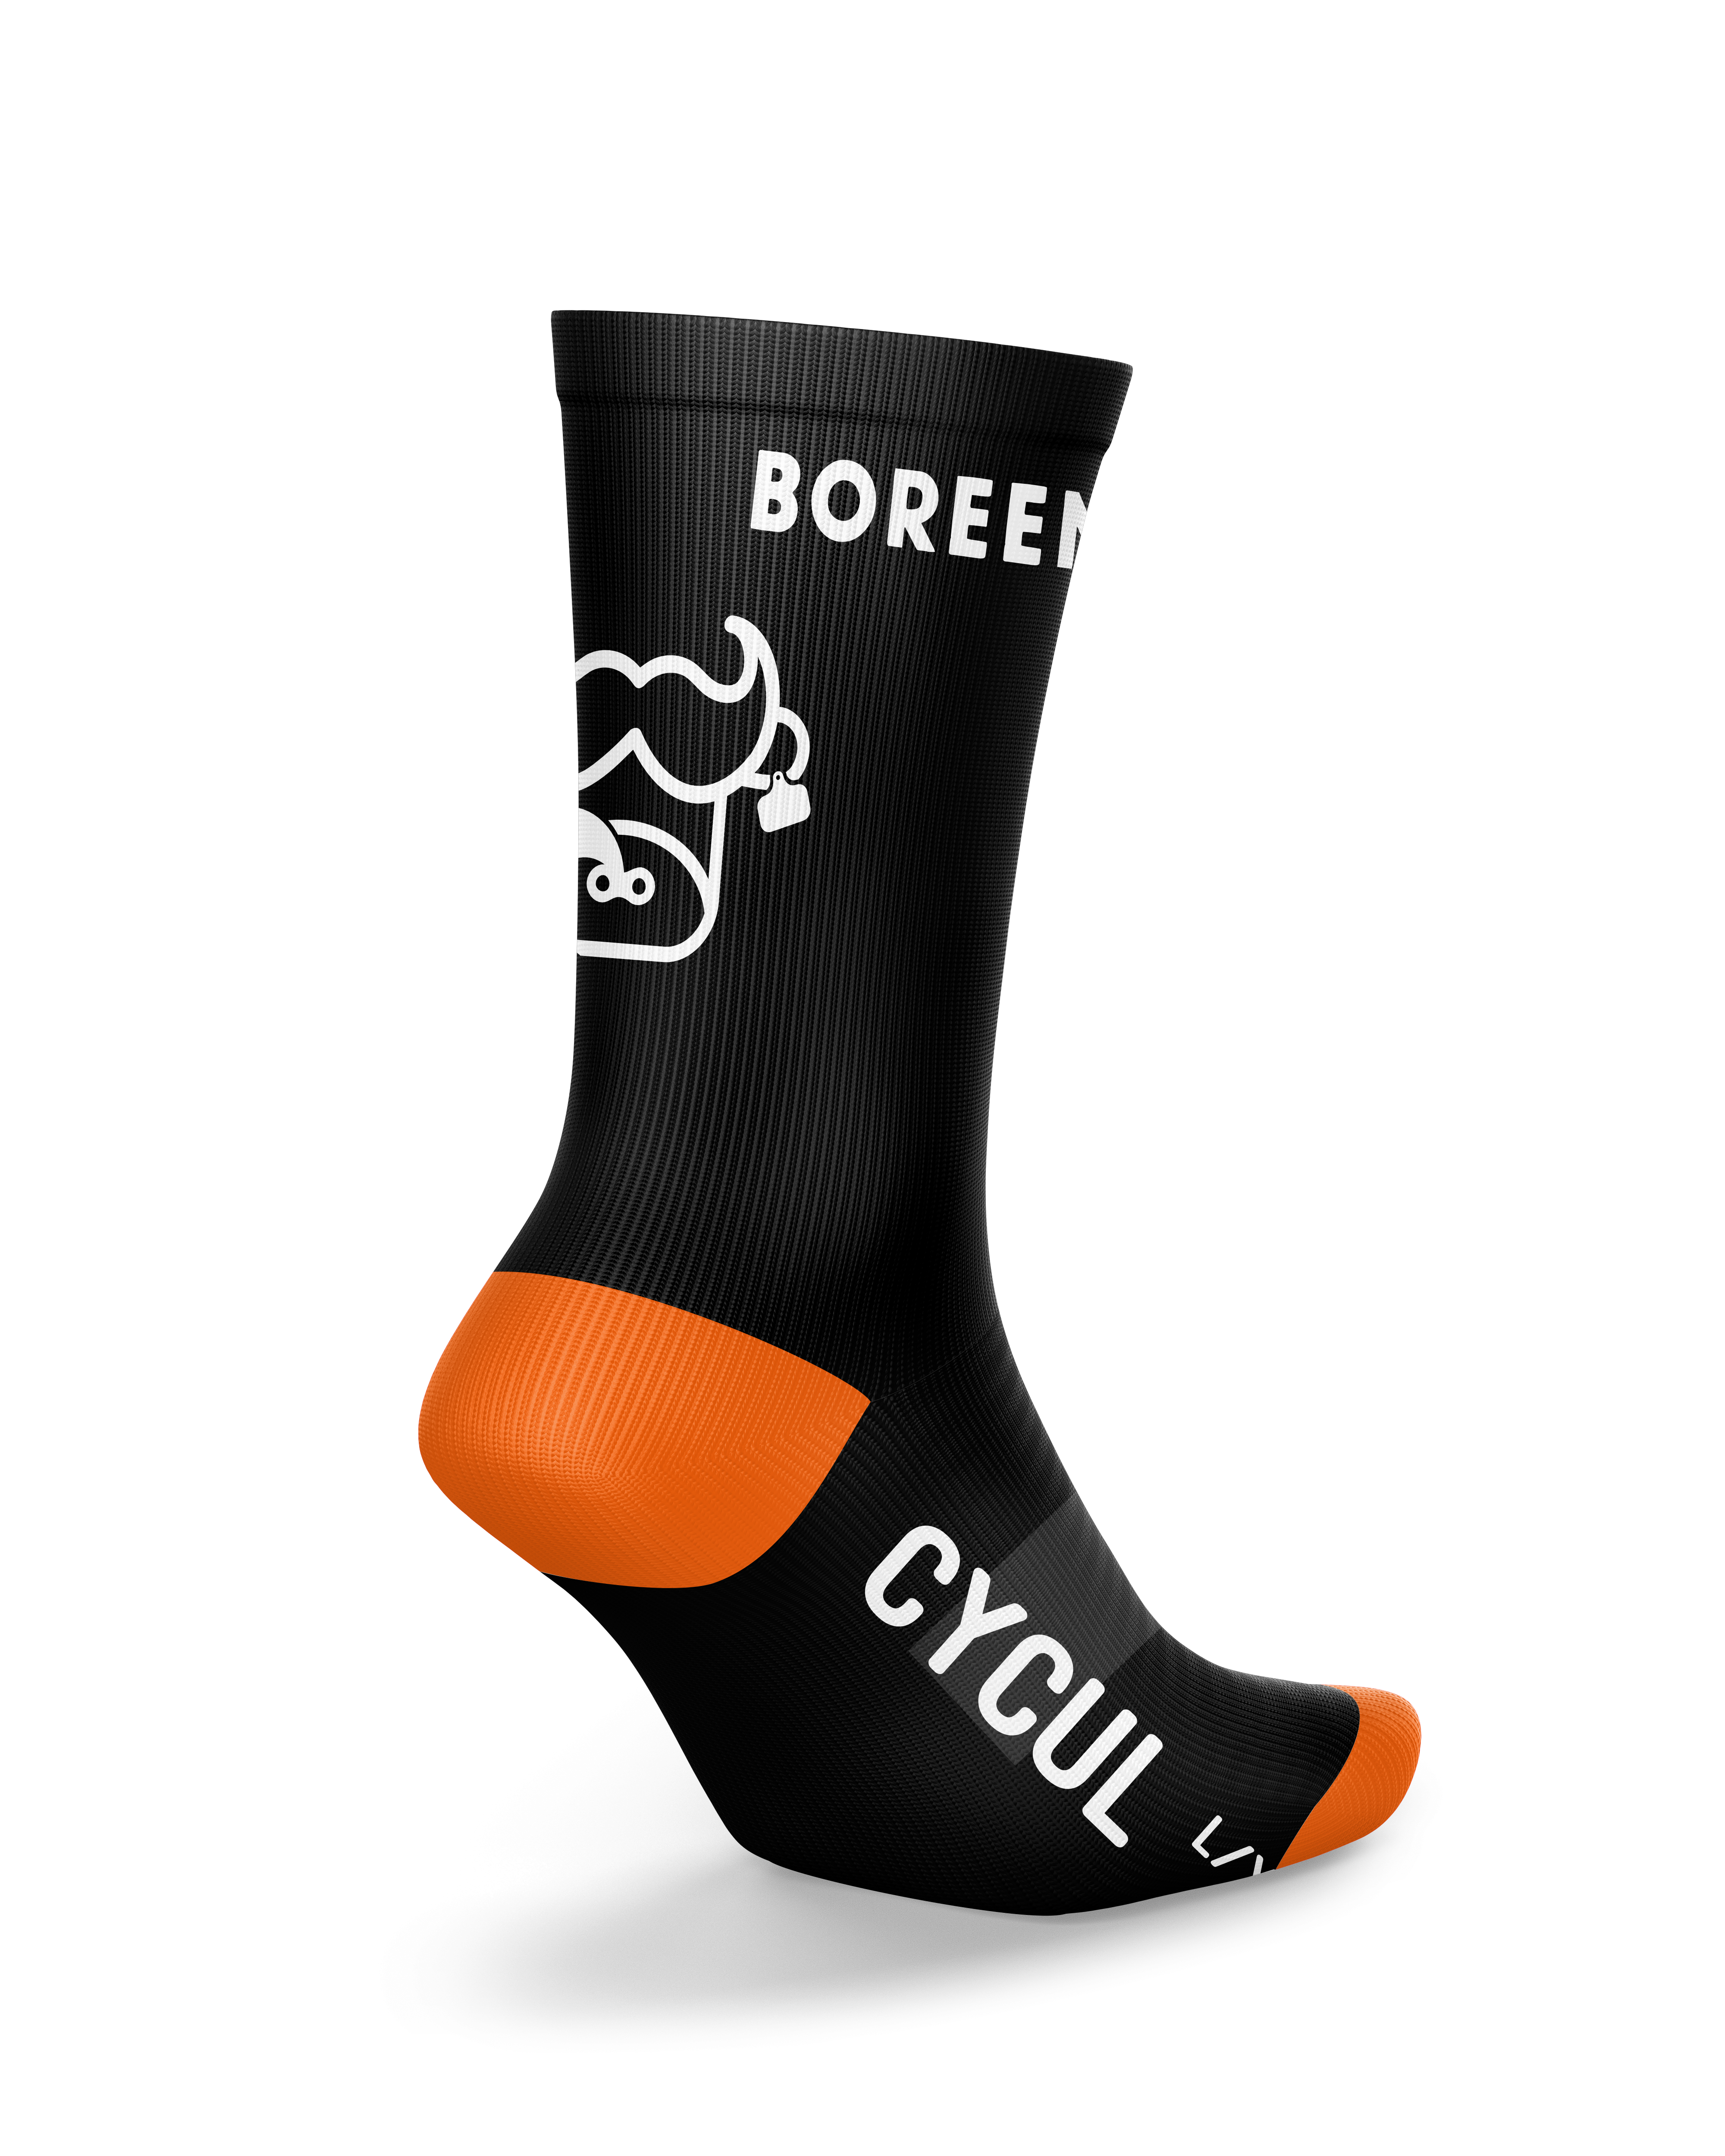 Cycul socks: Boreen